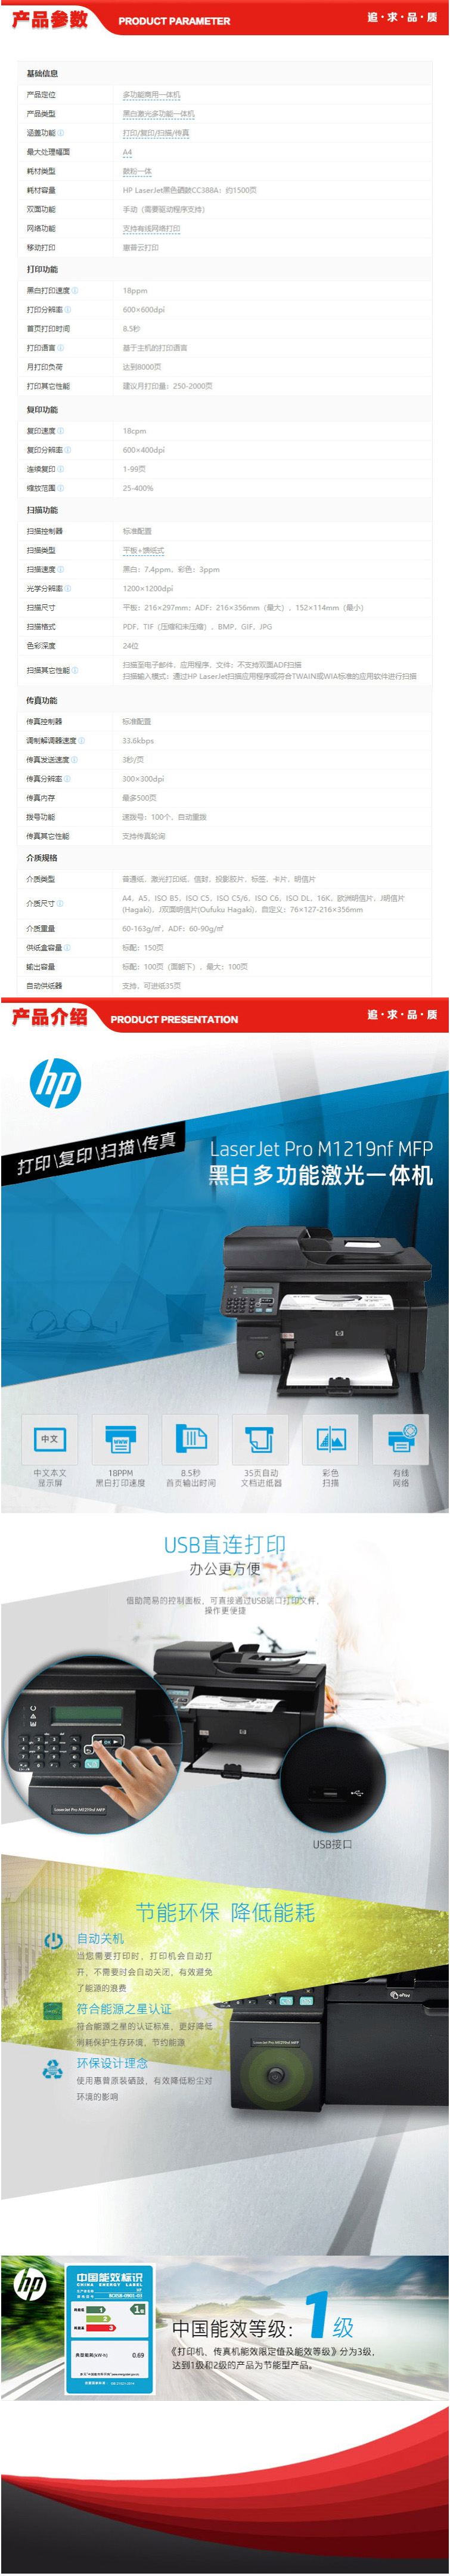 惠普 HP LaserJet Pro M1219nf 多功能一体机 - 优宜巧购.jpg